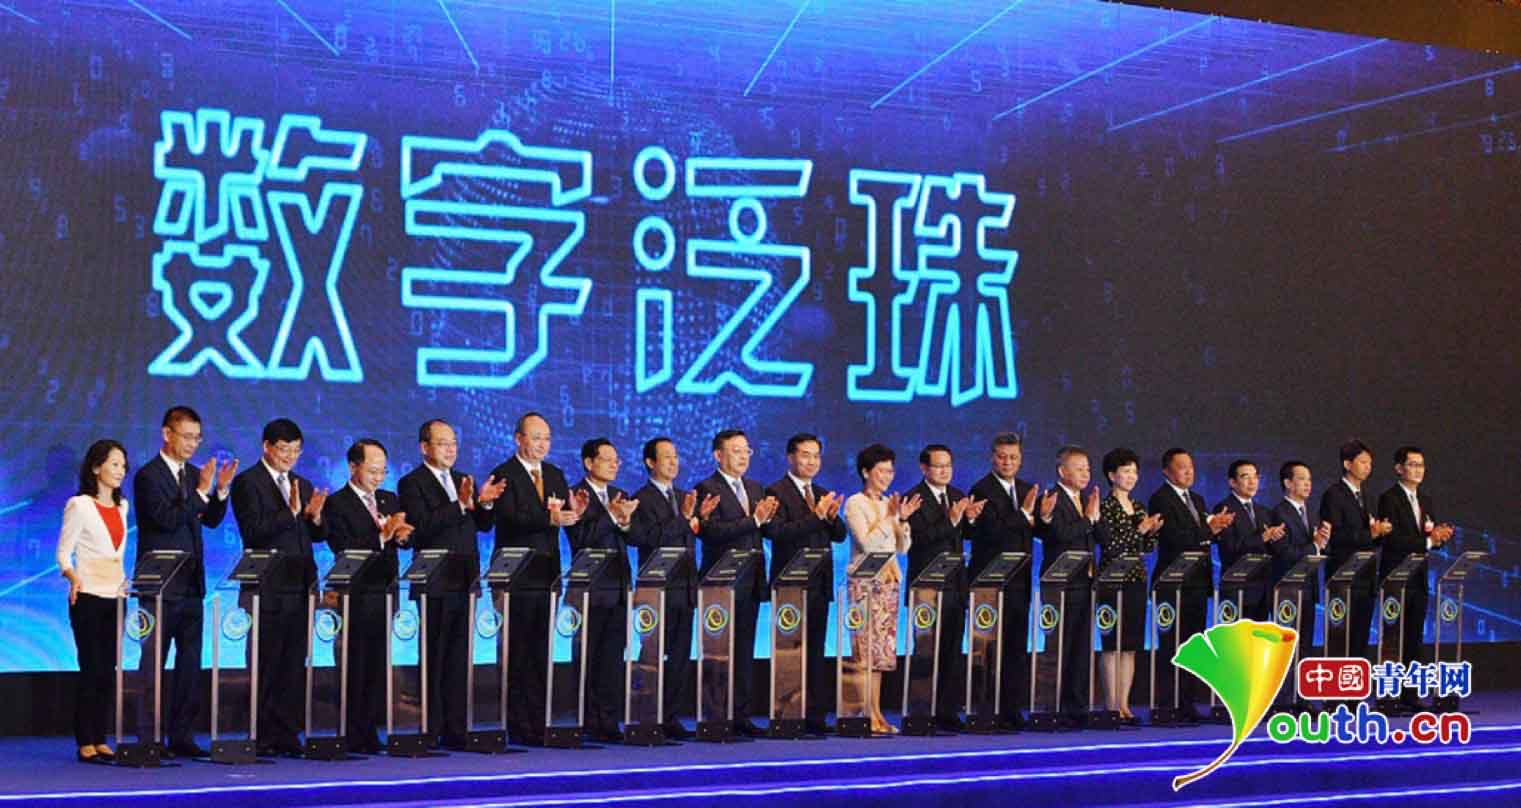 第十二届泛珠论坛开幕 联合腾讯发起数字泛珠